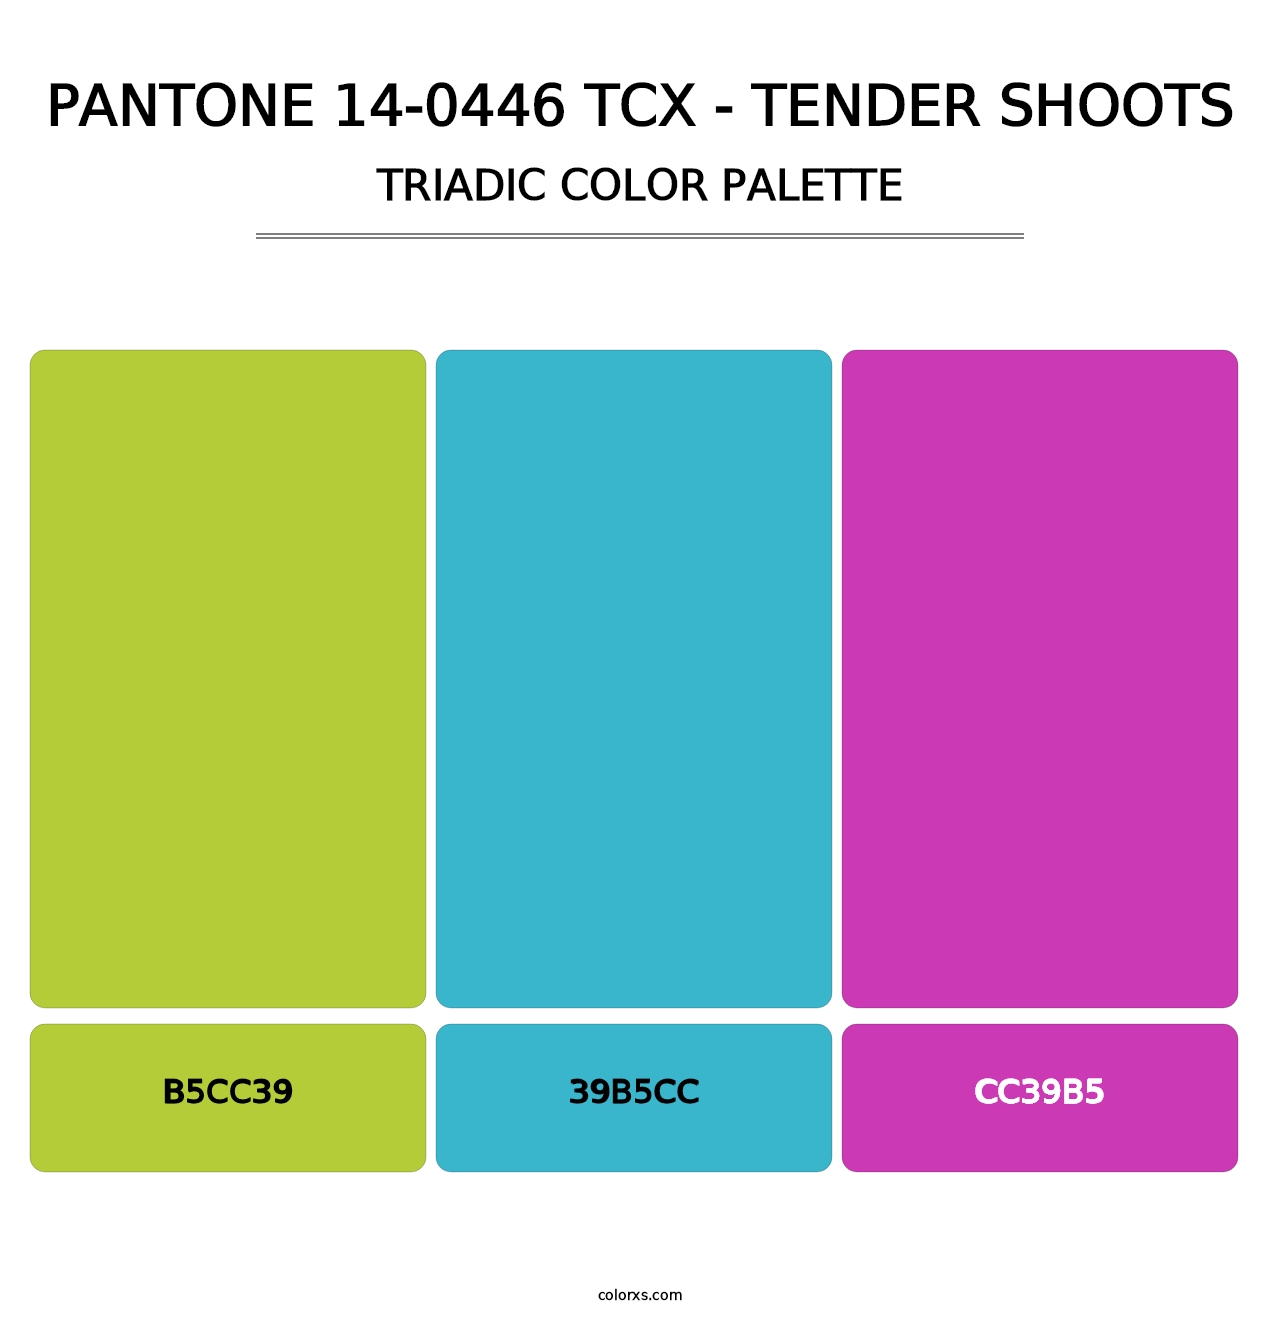 PANTONE 14-0446 TCX - Tender Shoots - Triadic Color Palette